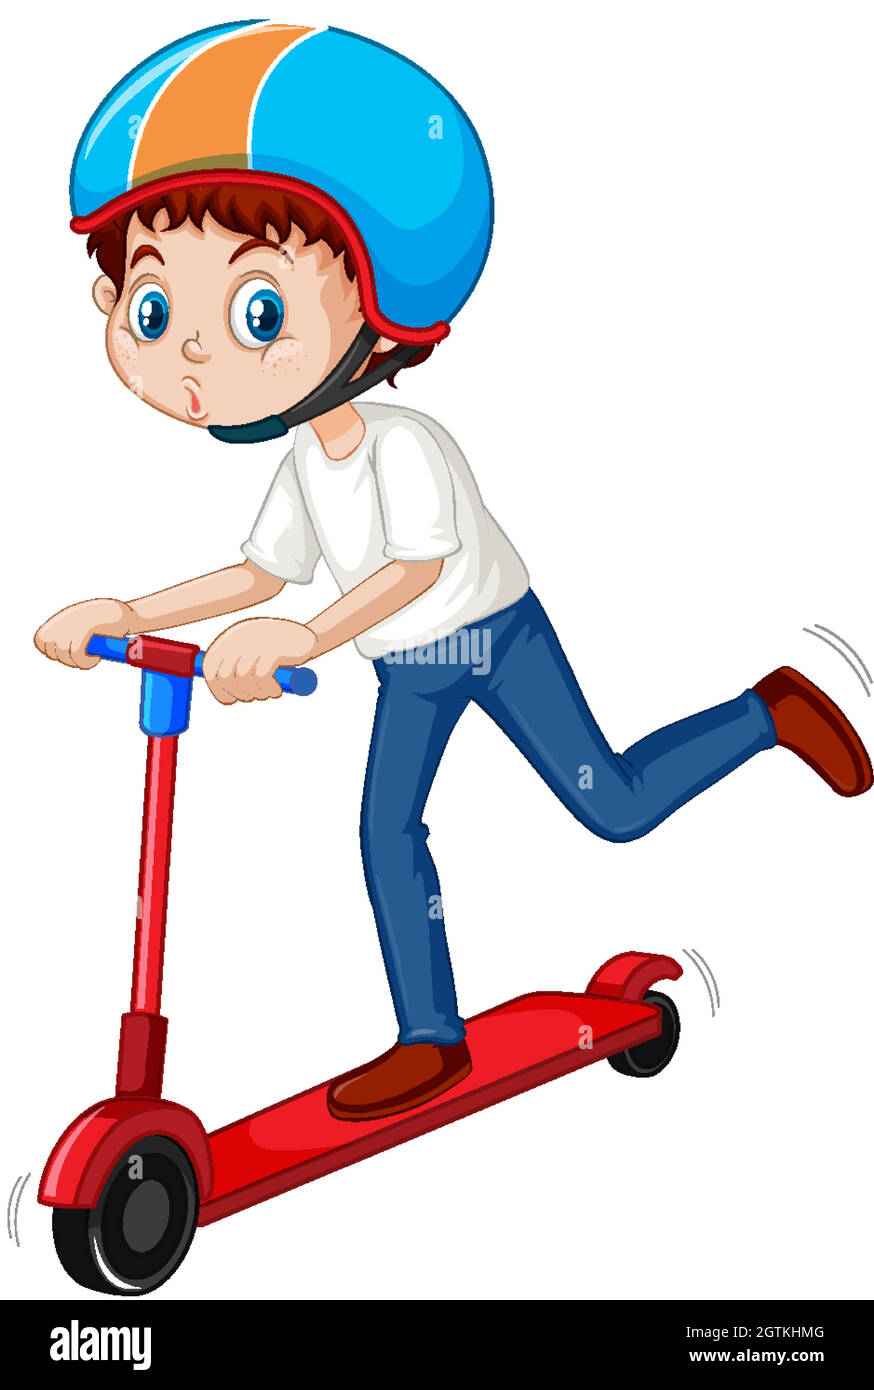 Ilustración vectorial de dibujos animados niño pequeño montando un scooter